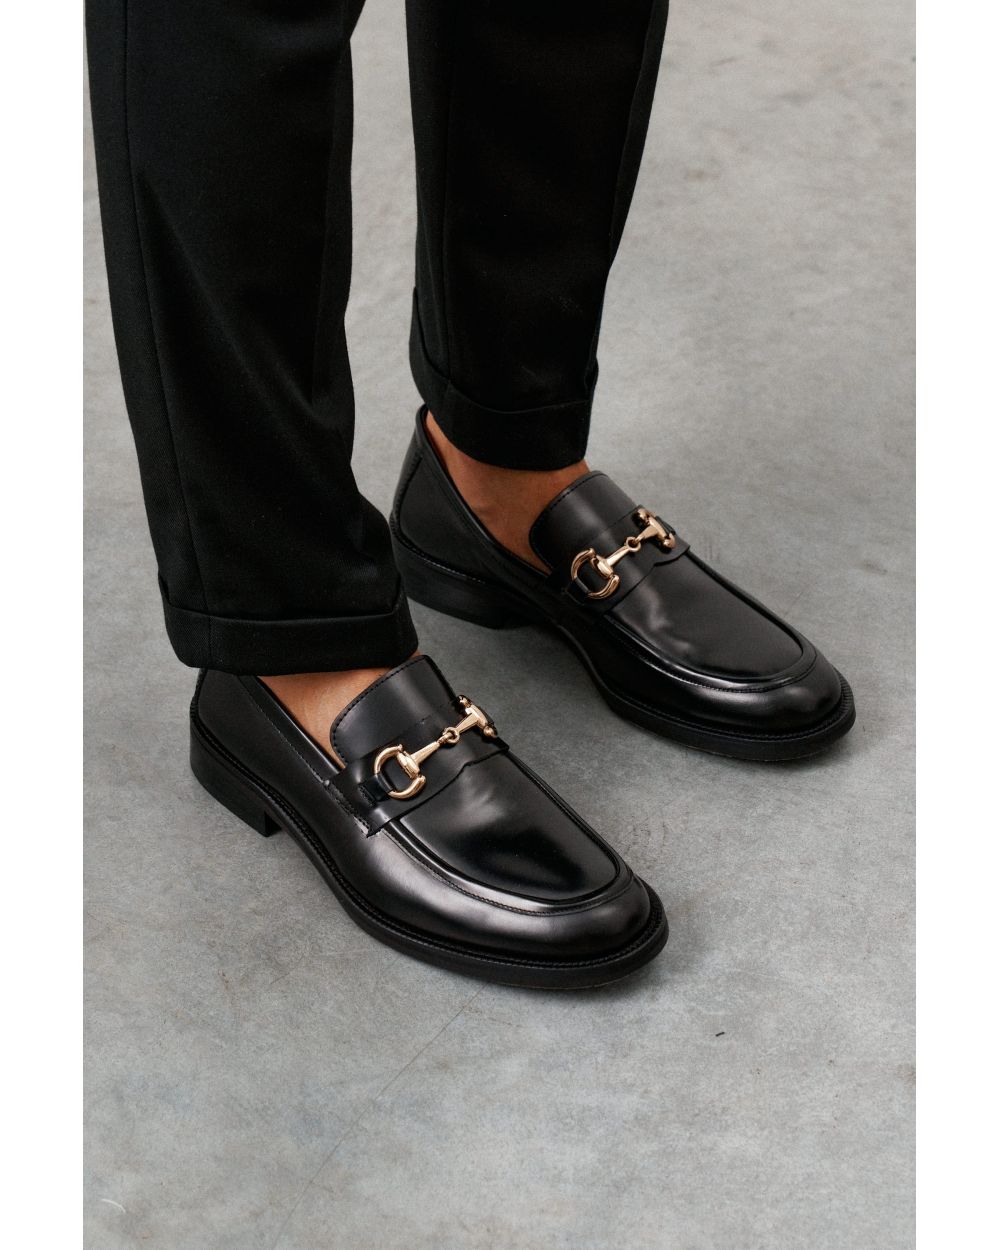 Туфли мужские лоферы черные, глянцевая кожа, с декоративной золотой пряжкой